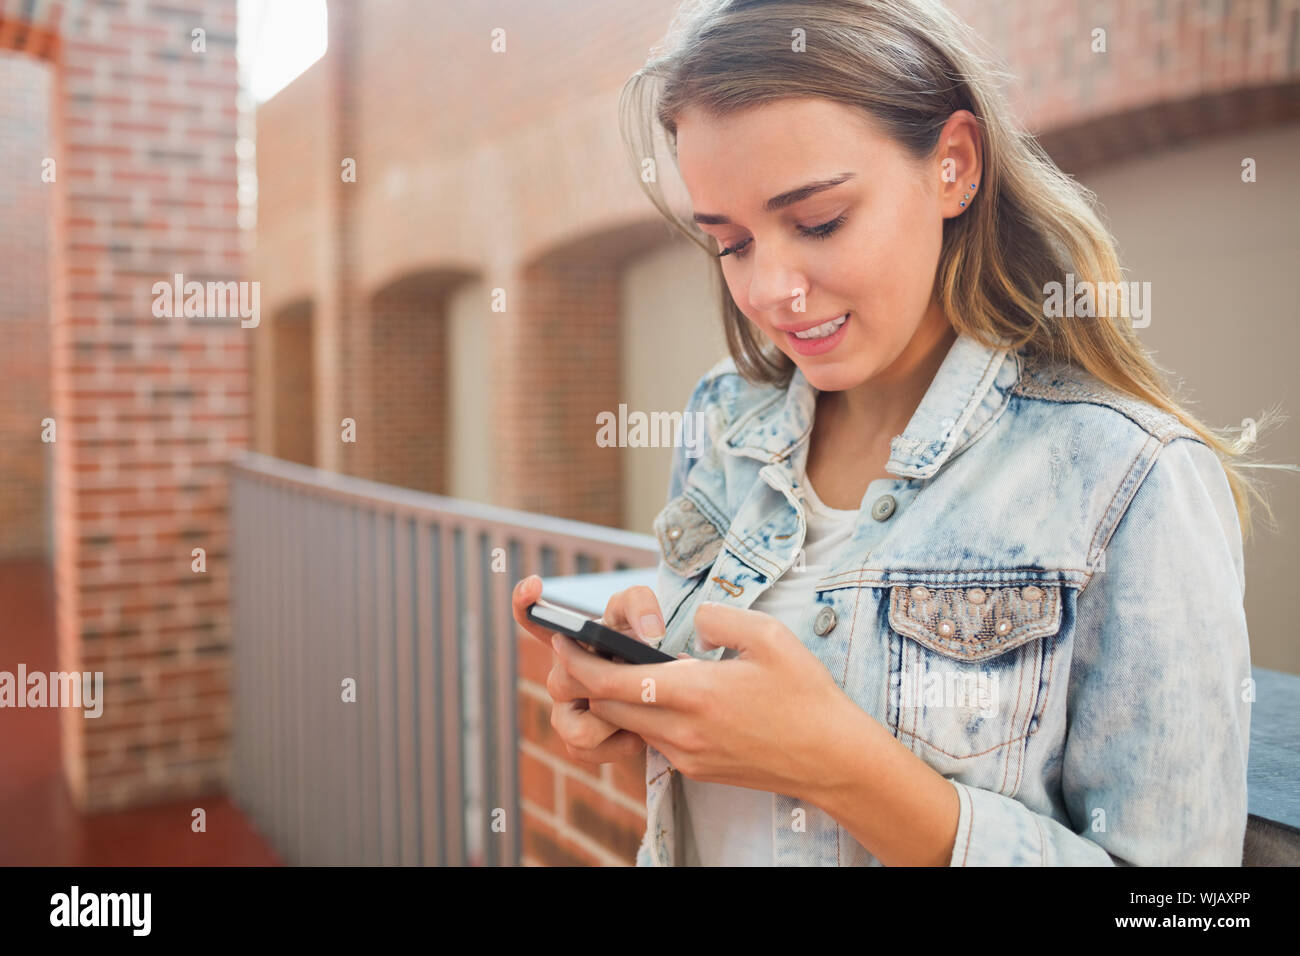 Lächelnd Schüler stehen in der Halle eine SMS Stockfoto